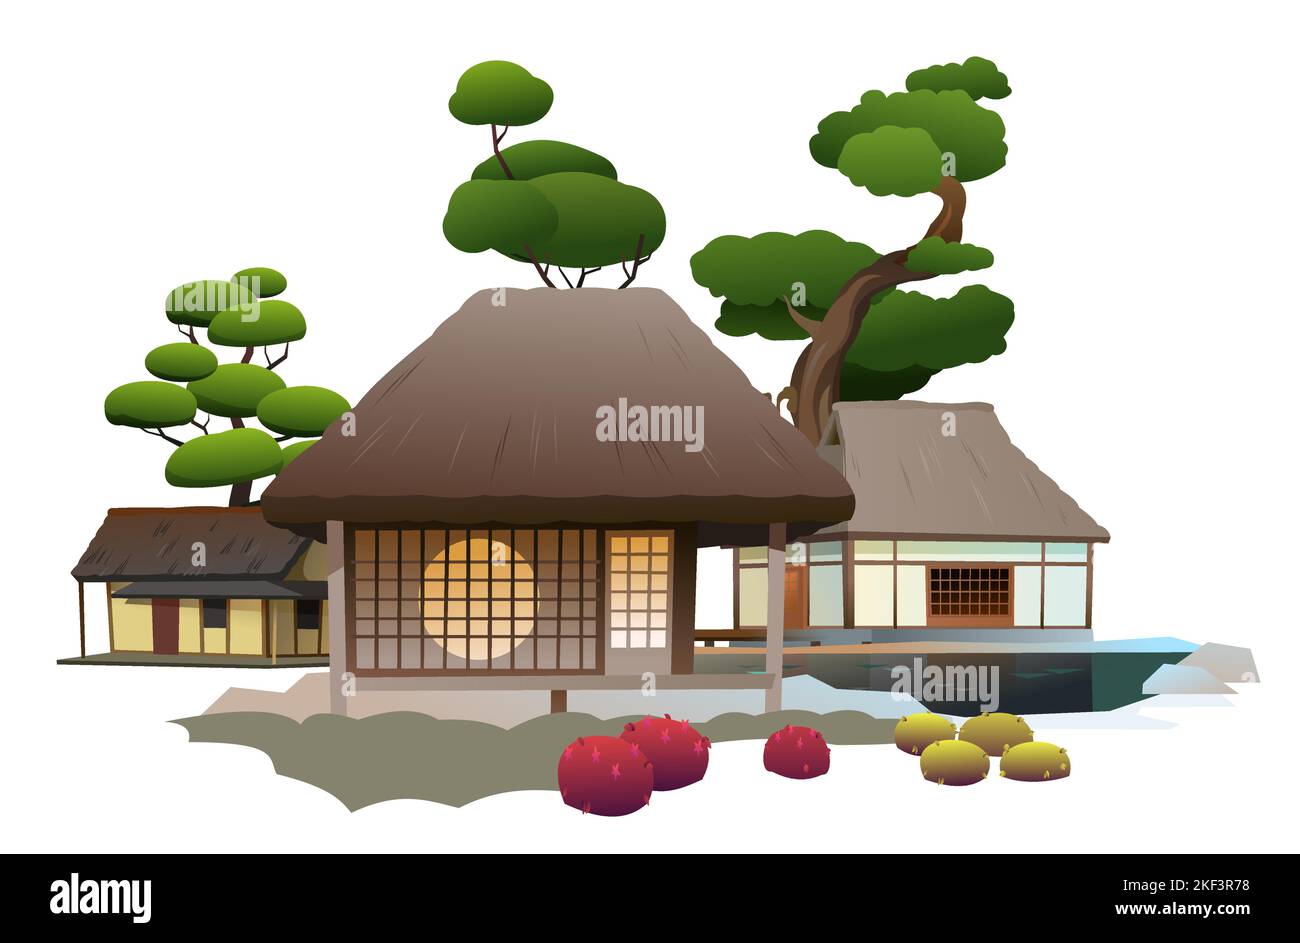 Maison japonaise traditionnelle. Petit village. Habitation rurale avec toit de chaume. Illustration vecteur Illustration de Vecteur